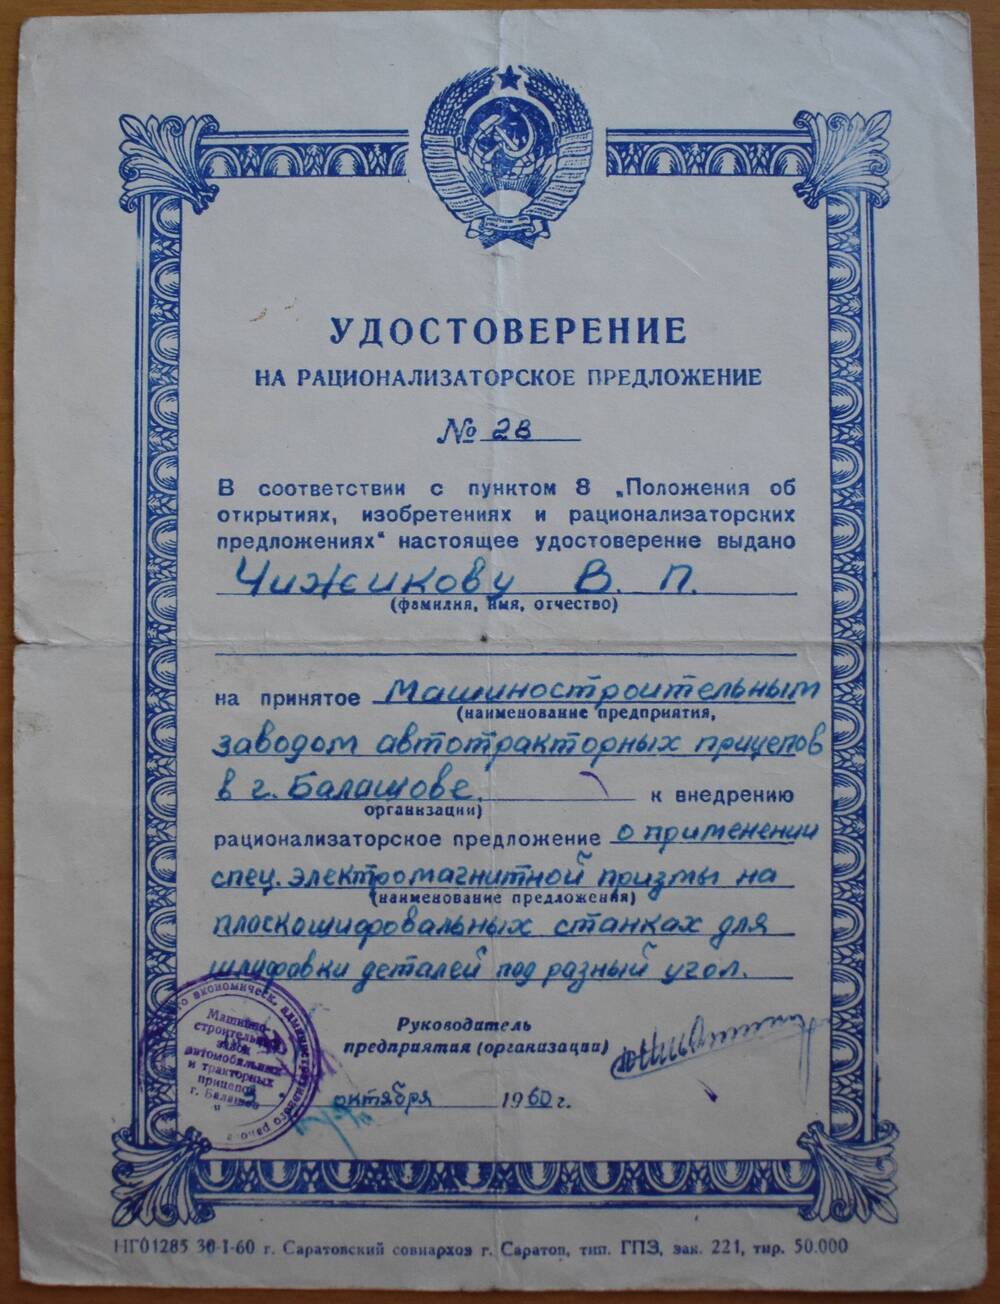 Удостоверение
на рационализаторское предложение № 28
Чижикова В.П., слесаря машзавода.